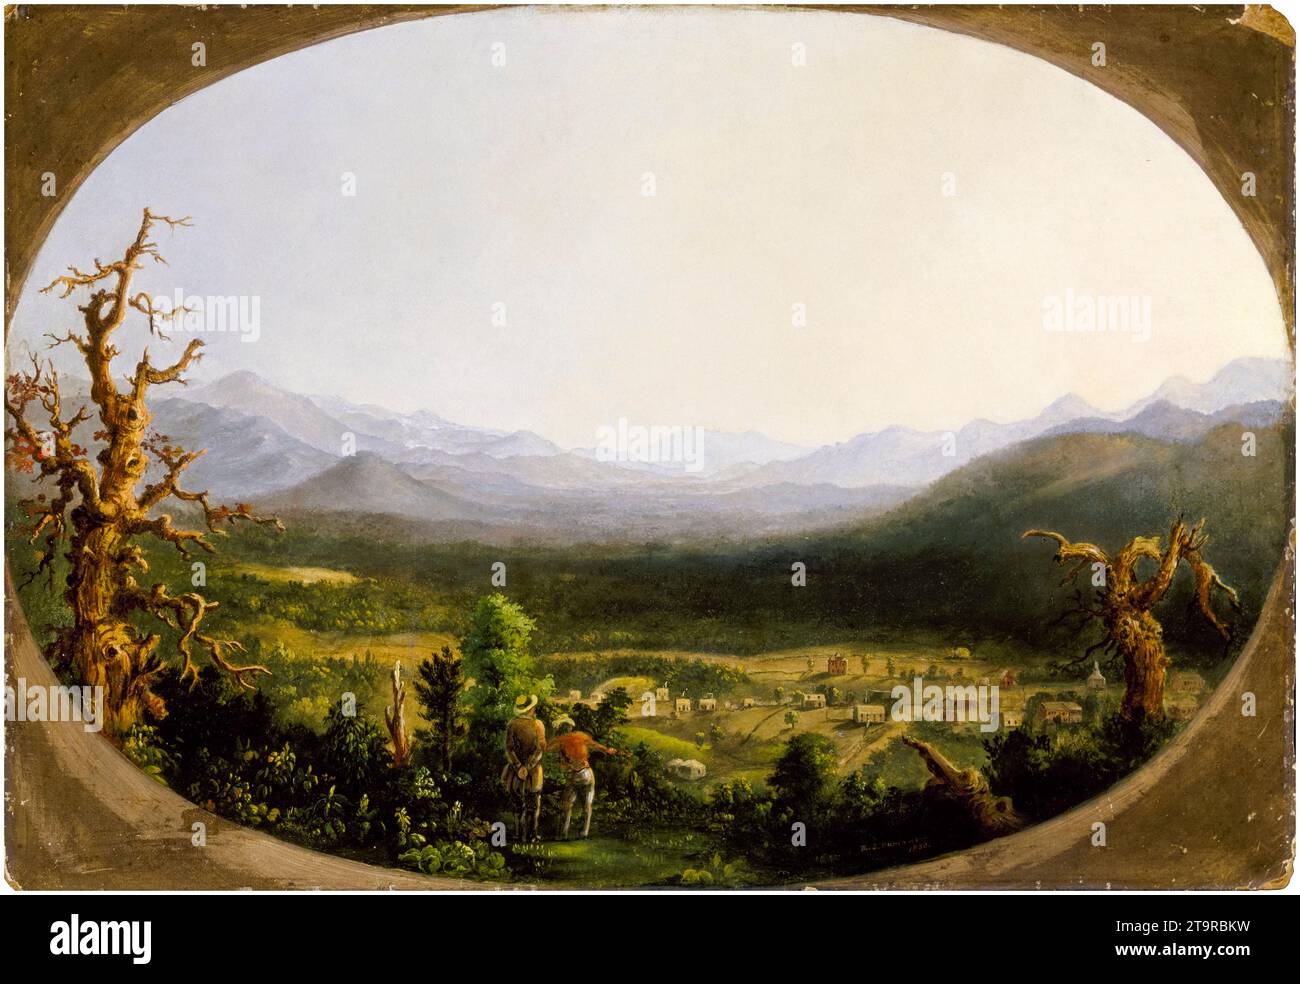 Robert S Duncanson, A View of Asheville, North Carolina, paesaggio dipinto ad olio sul Consiglio dell'accademia, 1850 Foto Stock